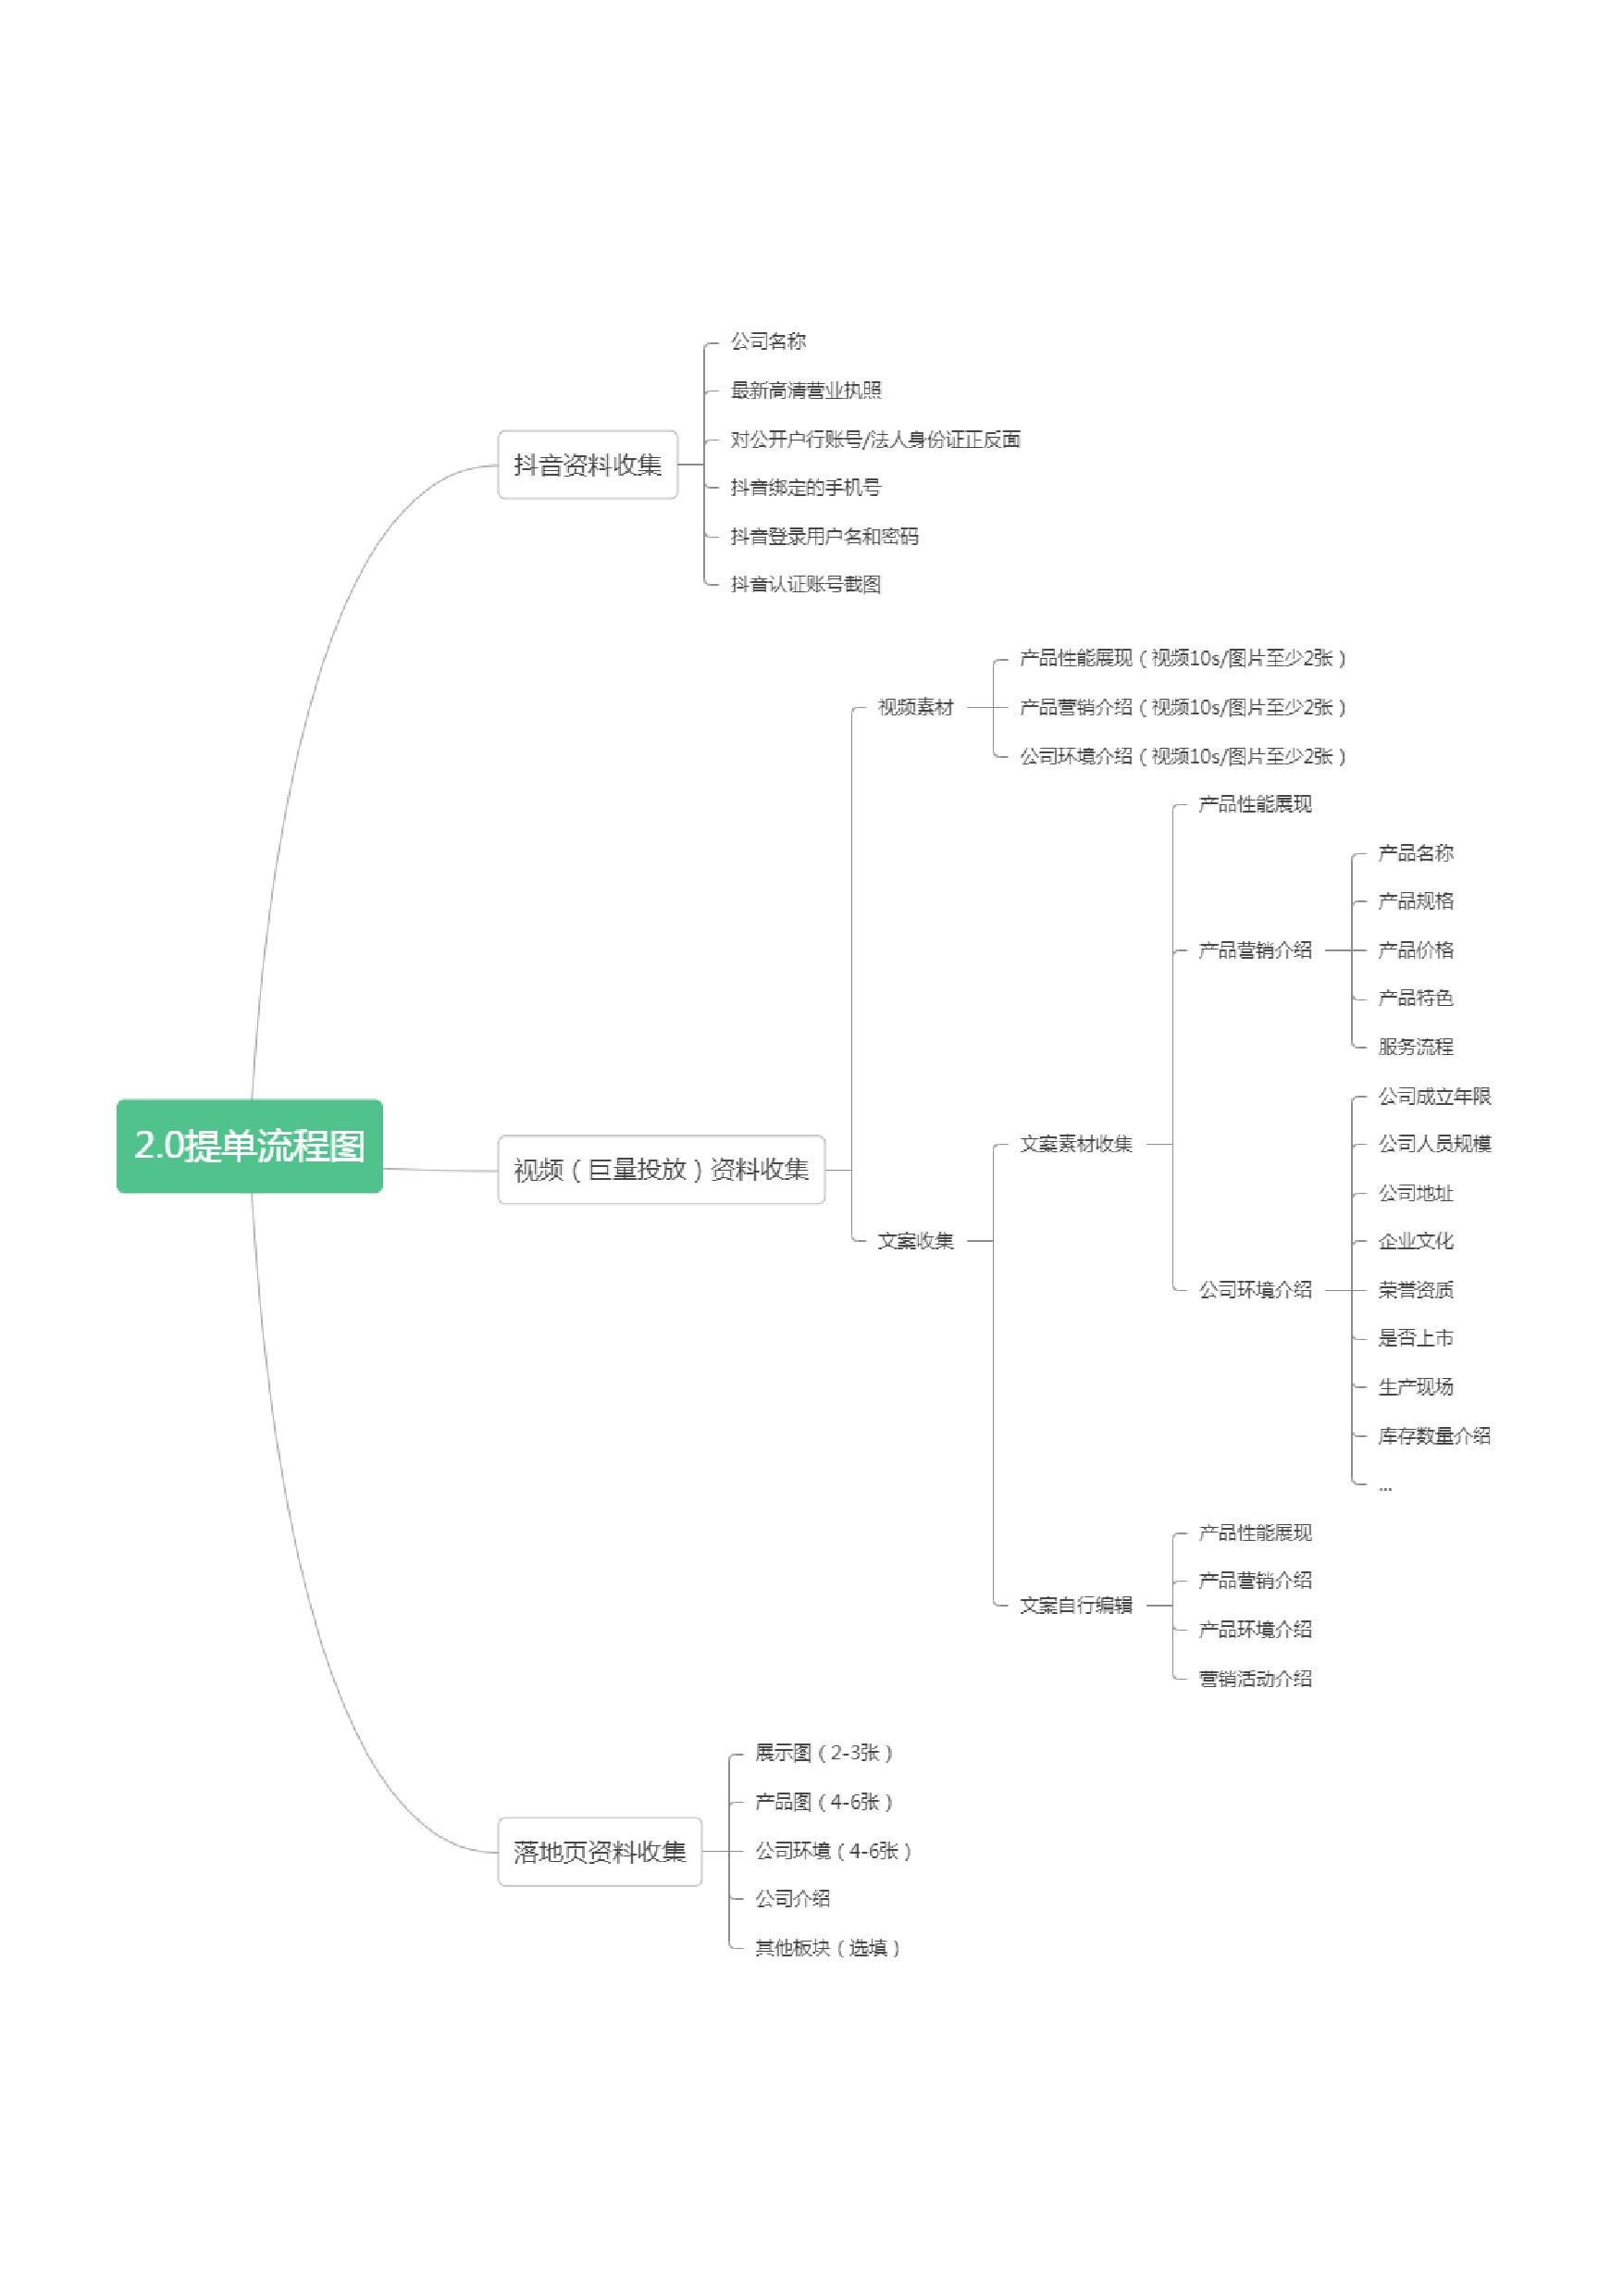 抖客2.0订单流程图-1.jpg